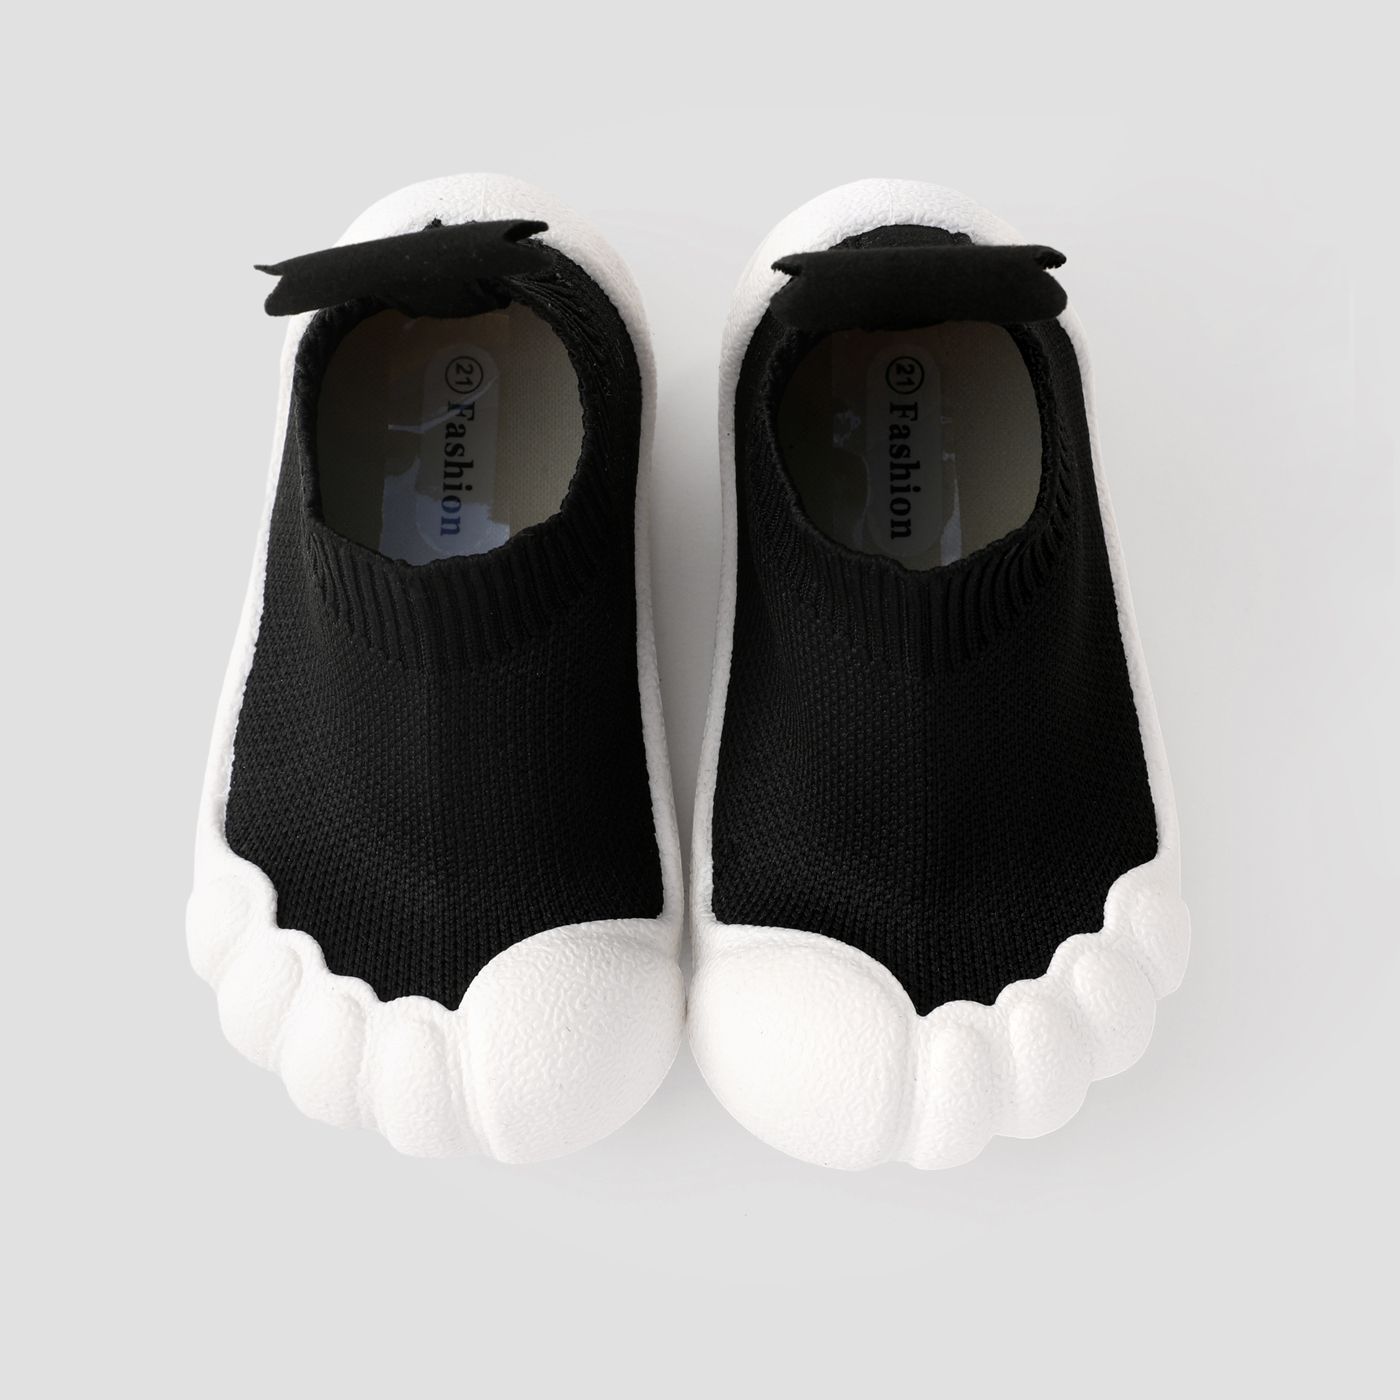 Tout-petits Et Enfants Unique Toe Cap Design Respirant Casual Chaussures